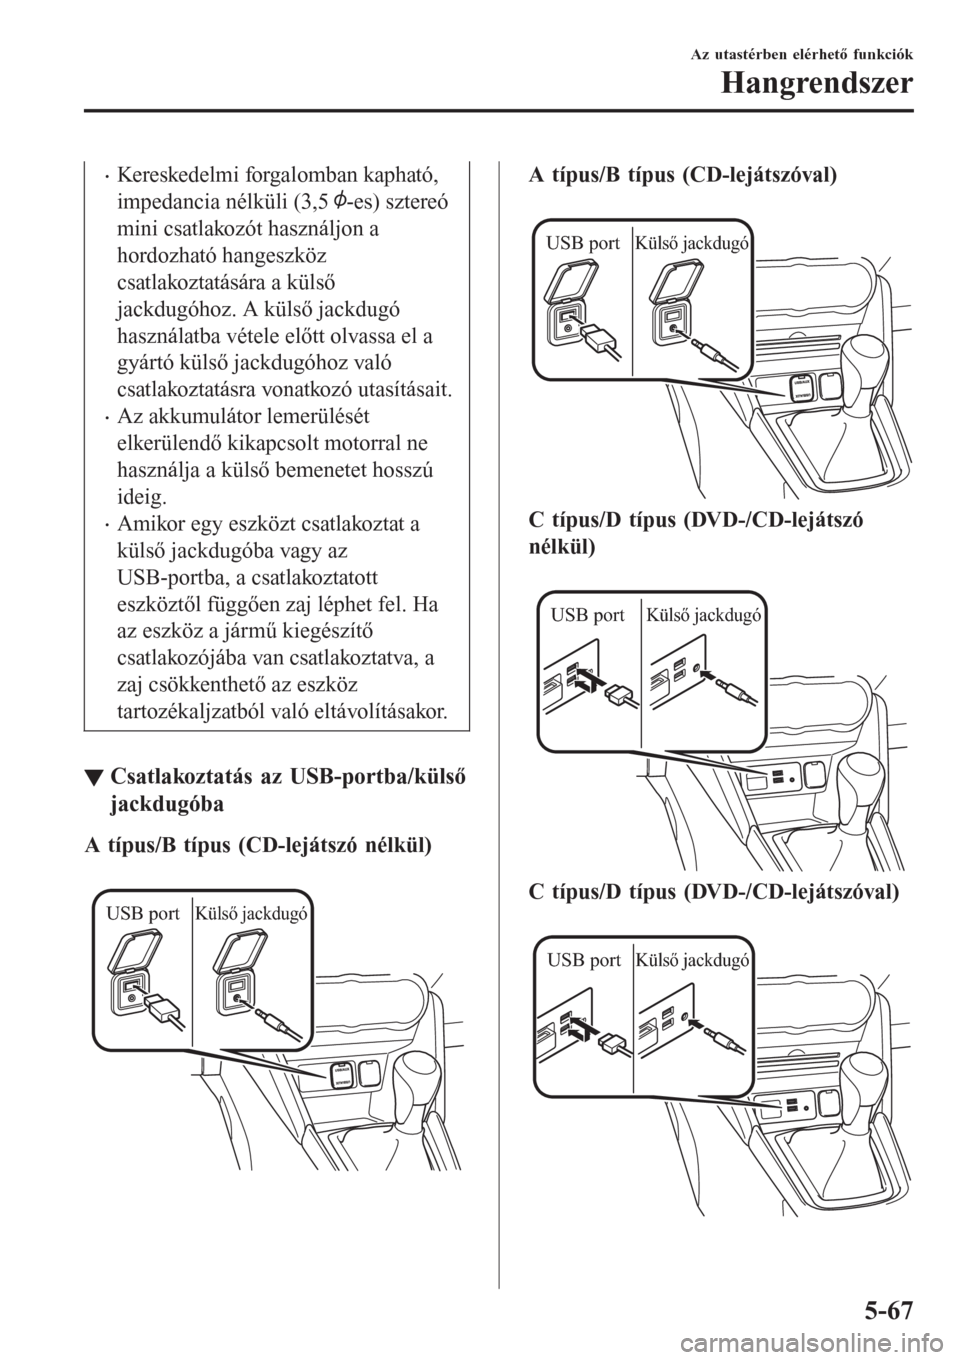 MAZDA MODEL CX-3 2016  Kezelési útmutató (in Hungarian) •Kereskedelmi forgalomban kapható,
impedancia nélküli (3,5 
-es) sztereó
mini csatlakozót használjon a
hordozható hangeszköz
csatlakoztatására a külső
jackdugóhoz. A külső jackdugó
h